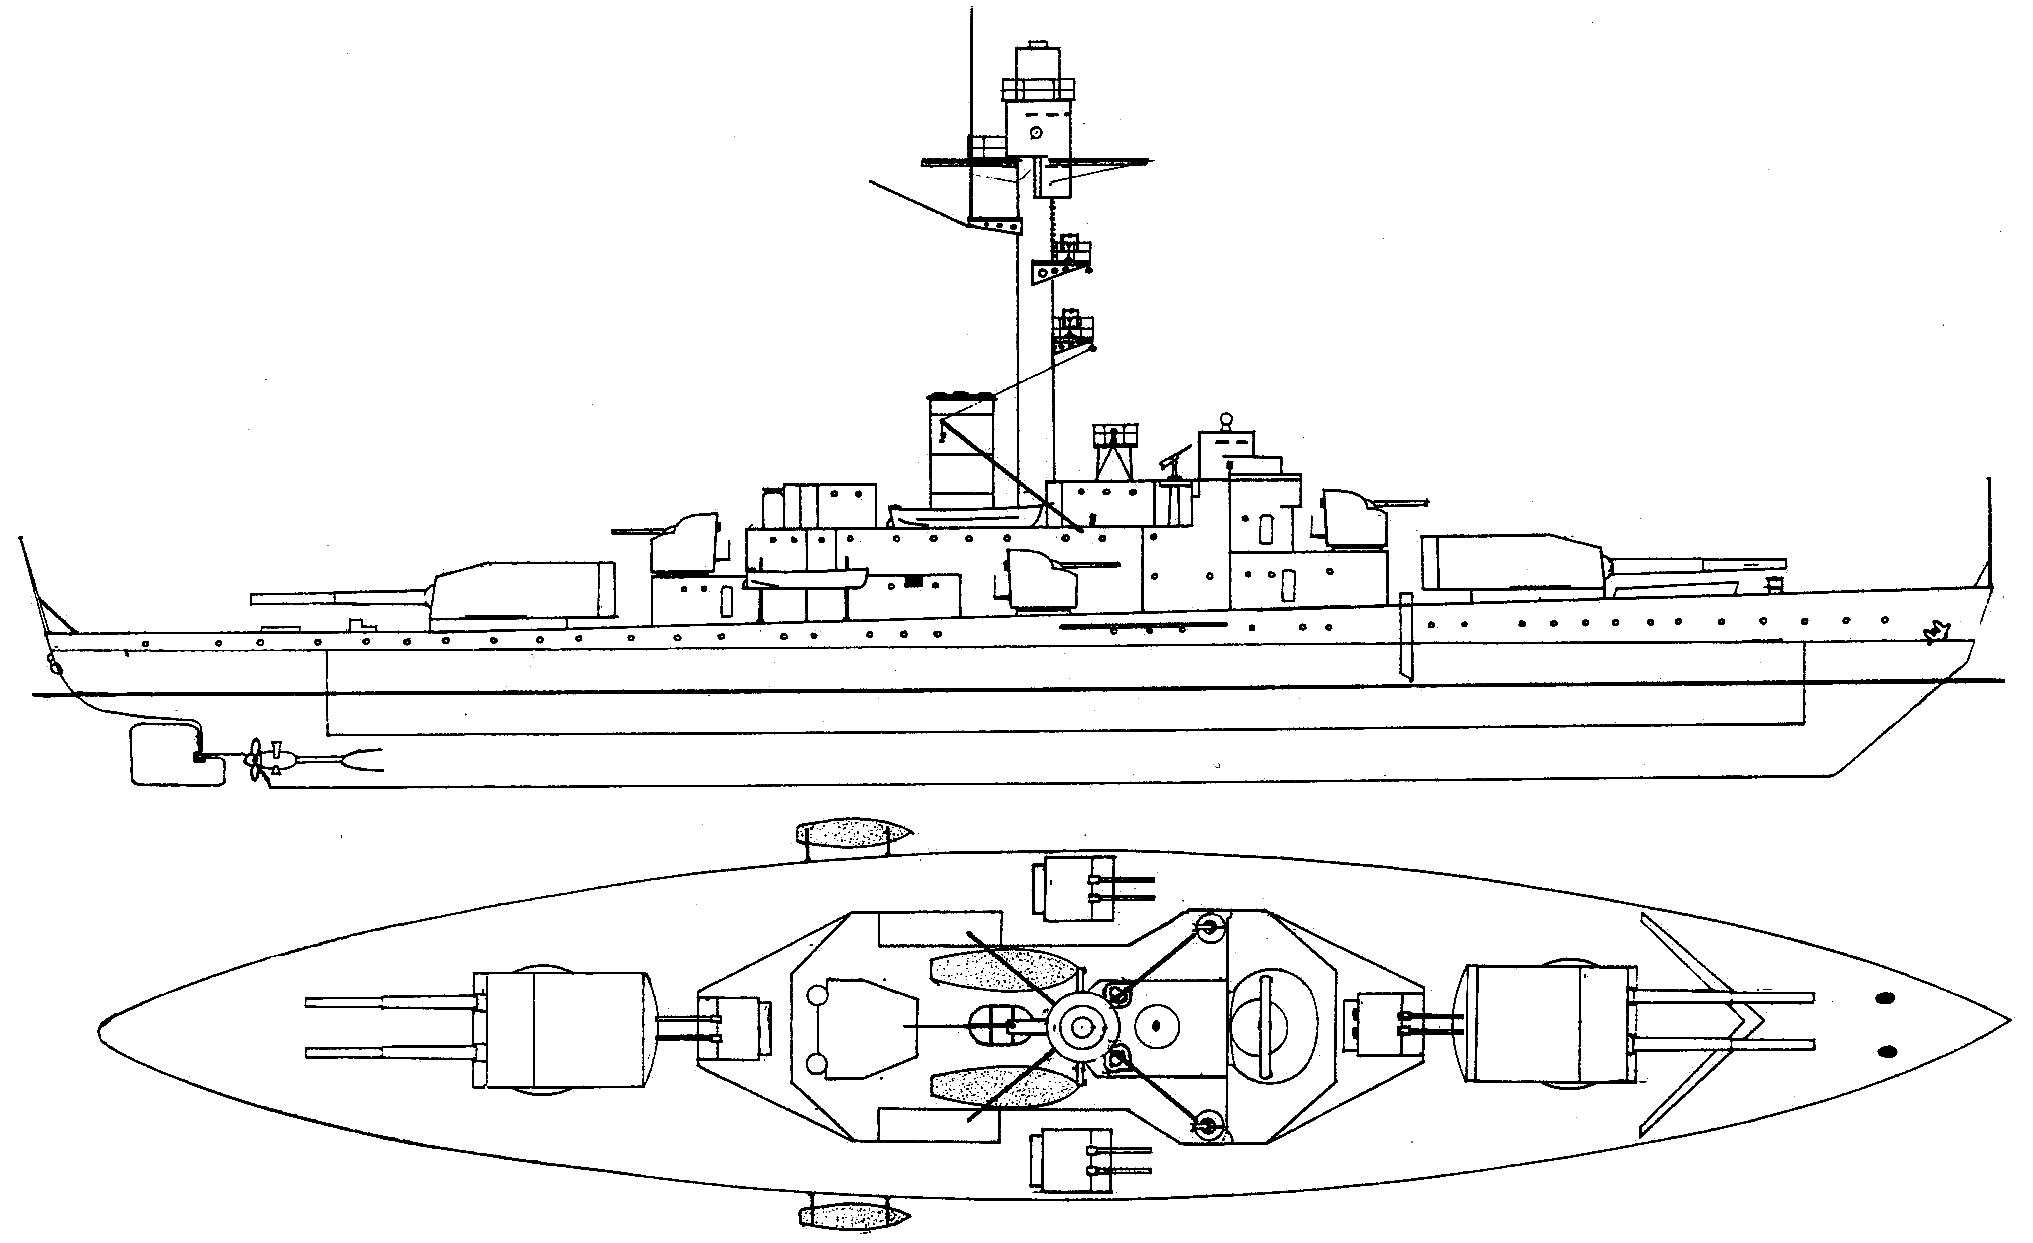 Finnish coastal defence ship Ilmarinen blueprint